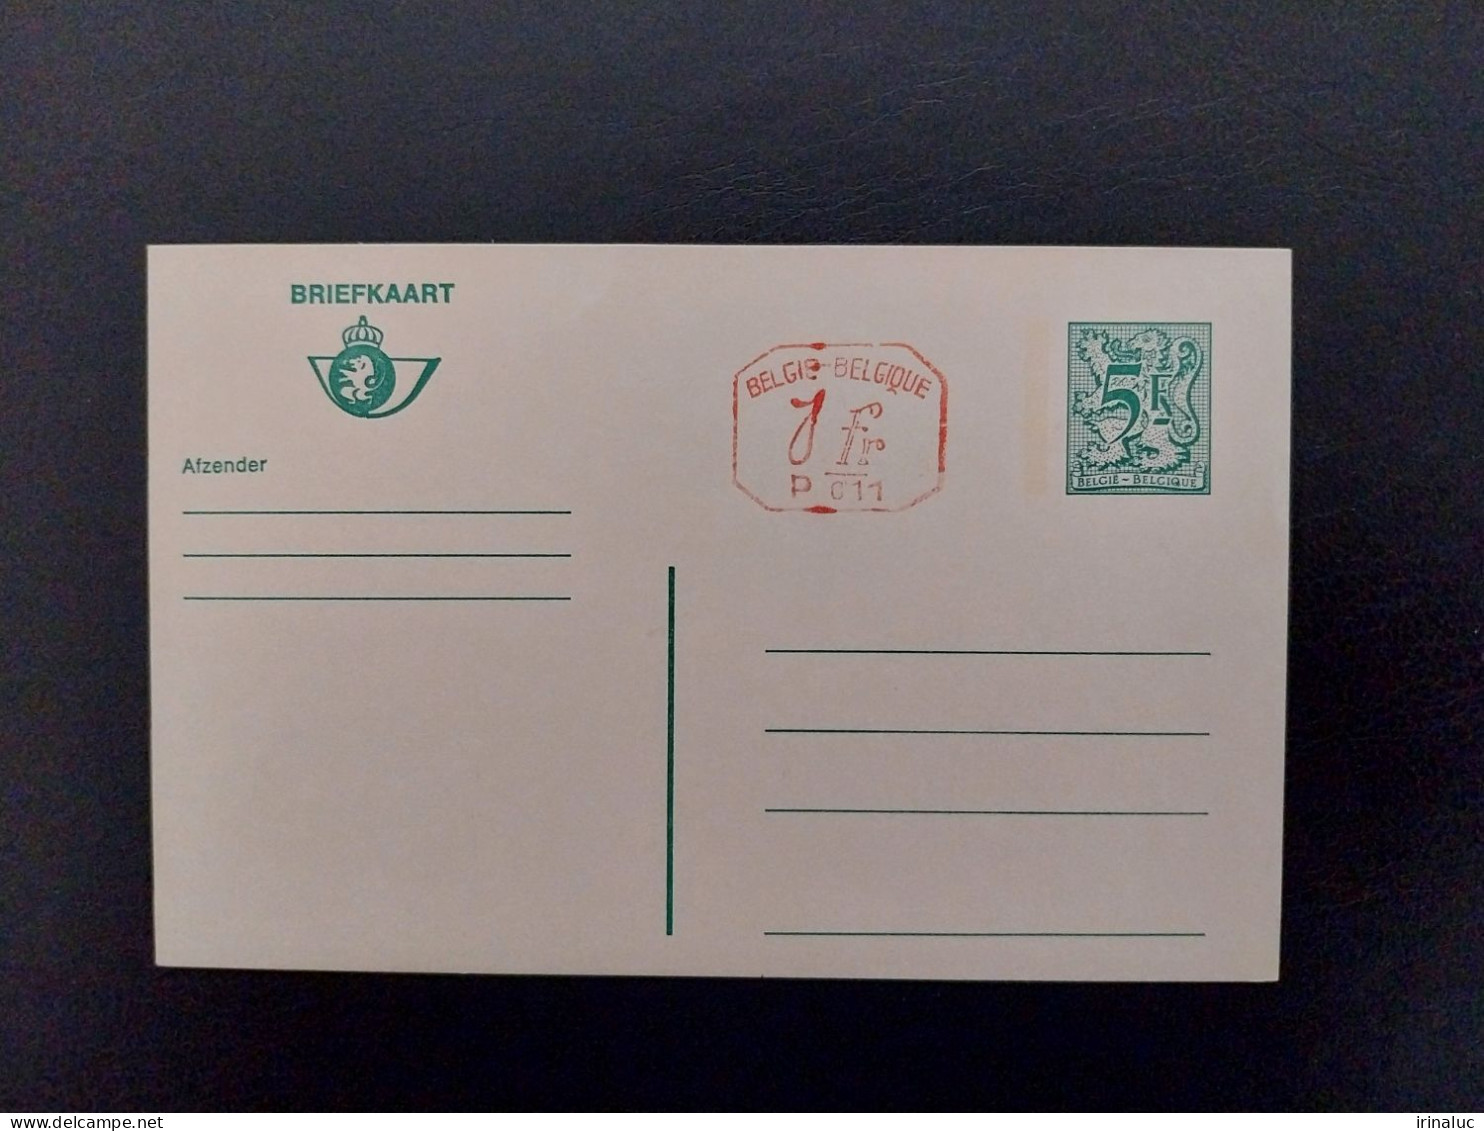 Briefkaart 187-IV P011 - Briefkaarten 1951-..